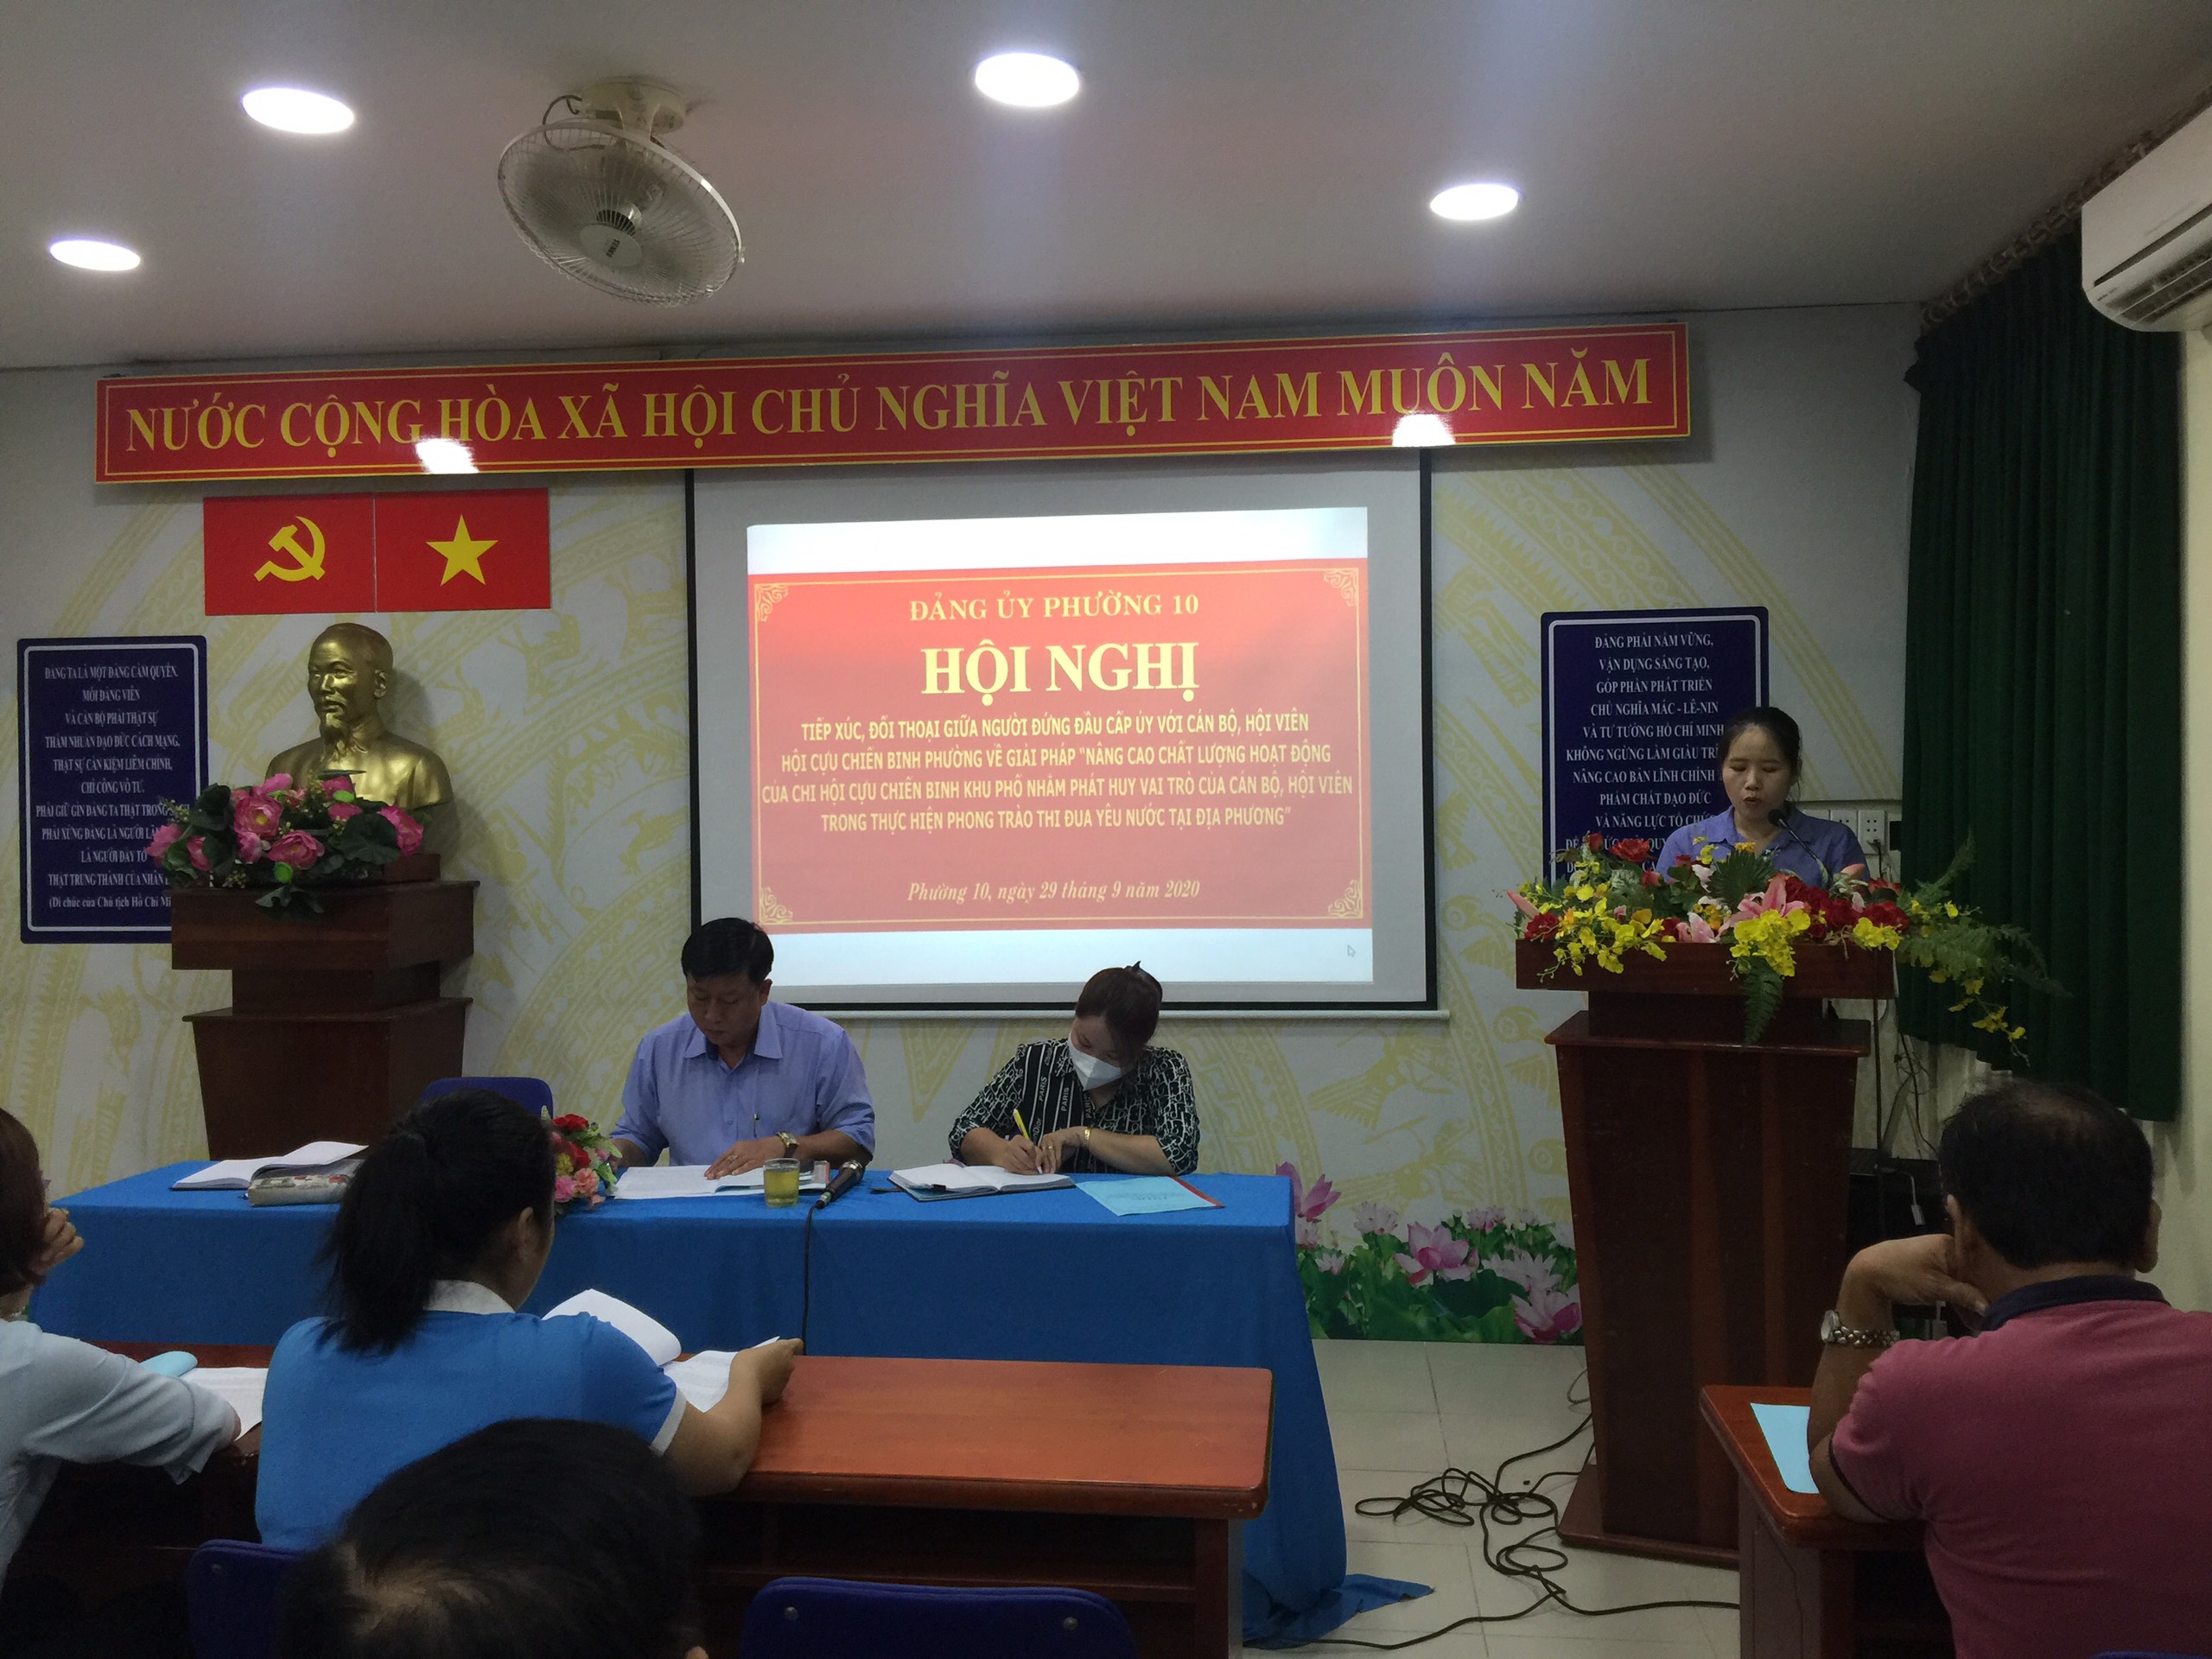 Đảng ủy Phường 10 quận Tân Bình tổ chức tiếp xúc, đối thoại với cán bộ,  hội viên Hội Cựu chiến binh phường